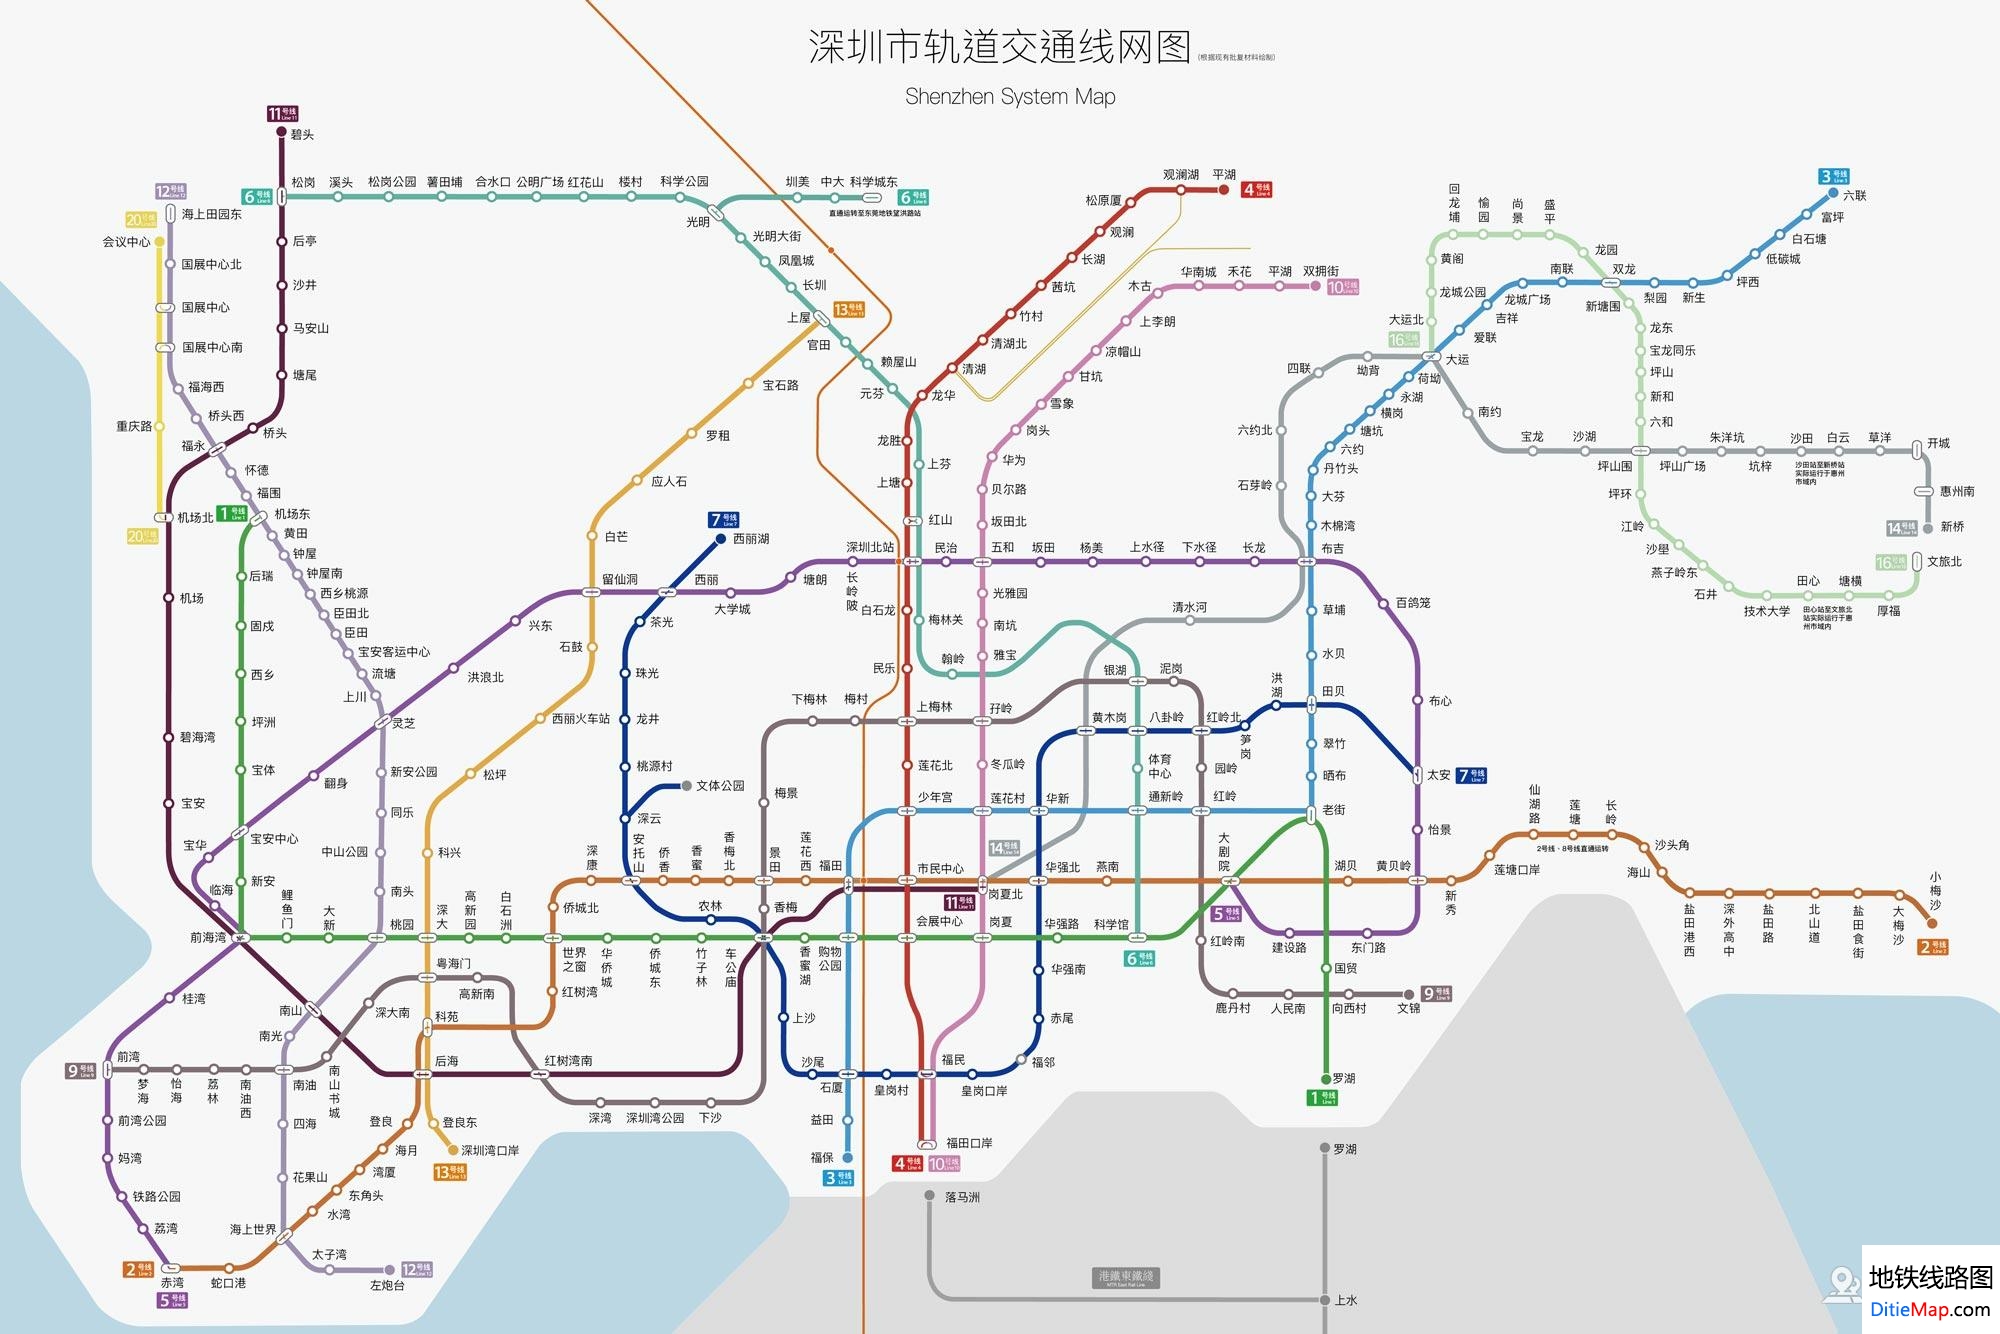 深圳地铁线路图 运营时间票价站点 查询下载 深圳地铁线路图 深圳地铁